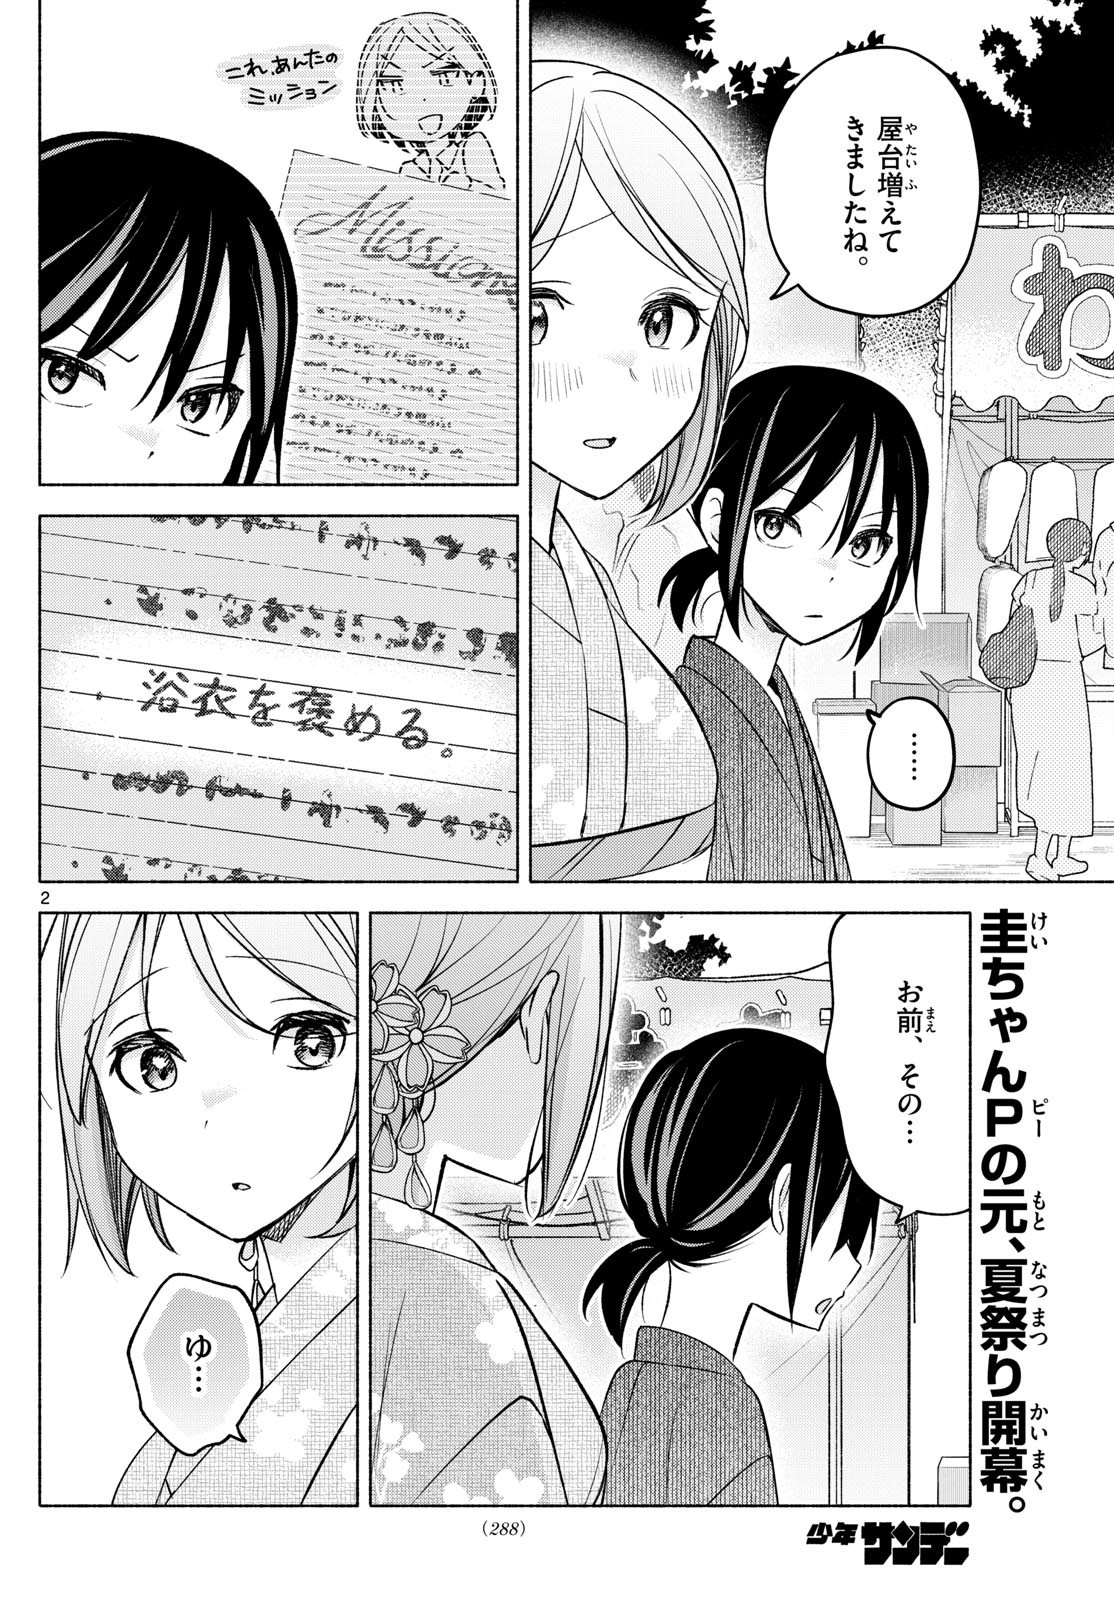 Kimi to Warui Koto ga Shitai - Chapter 045 - Page 2